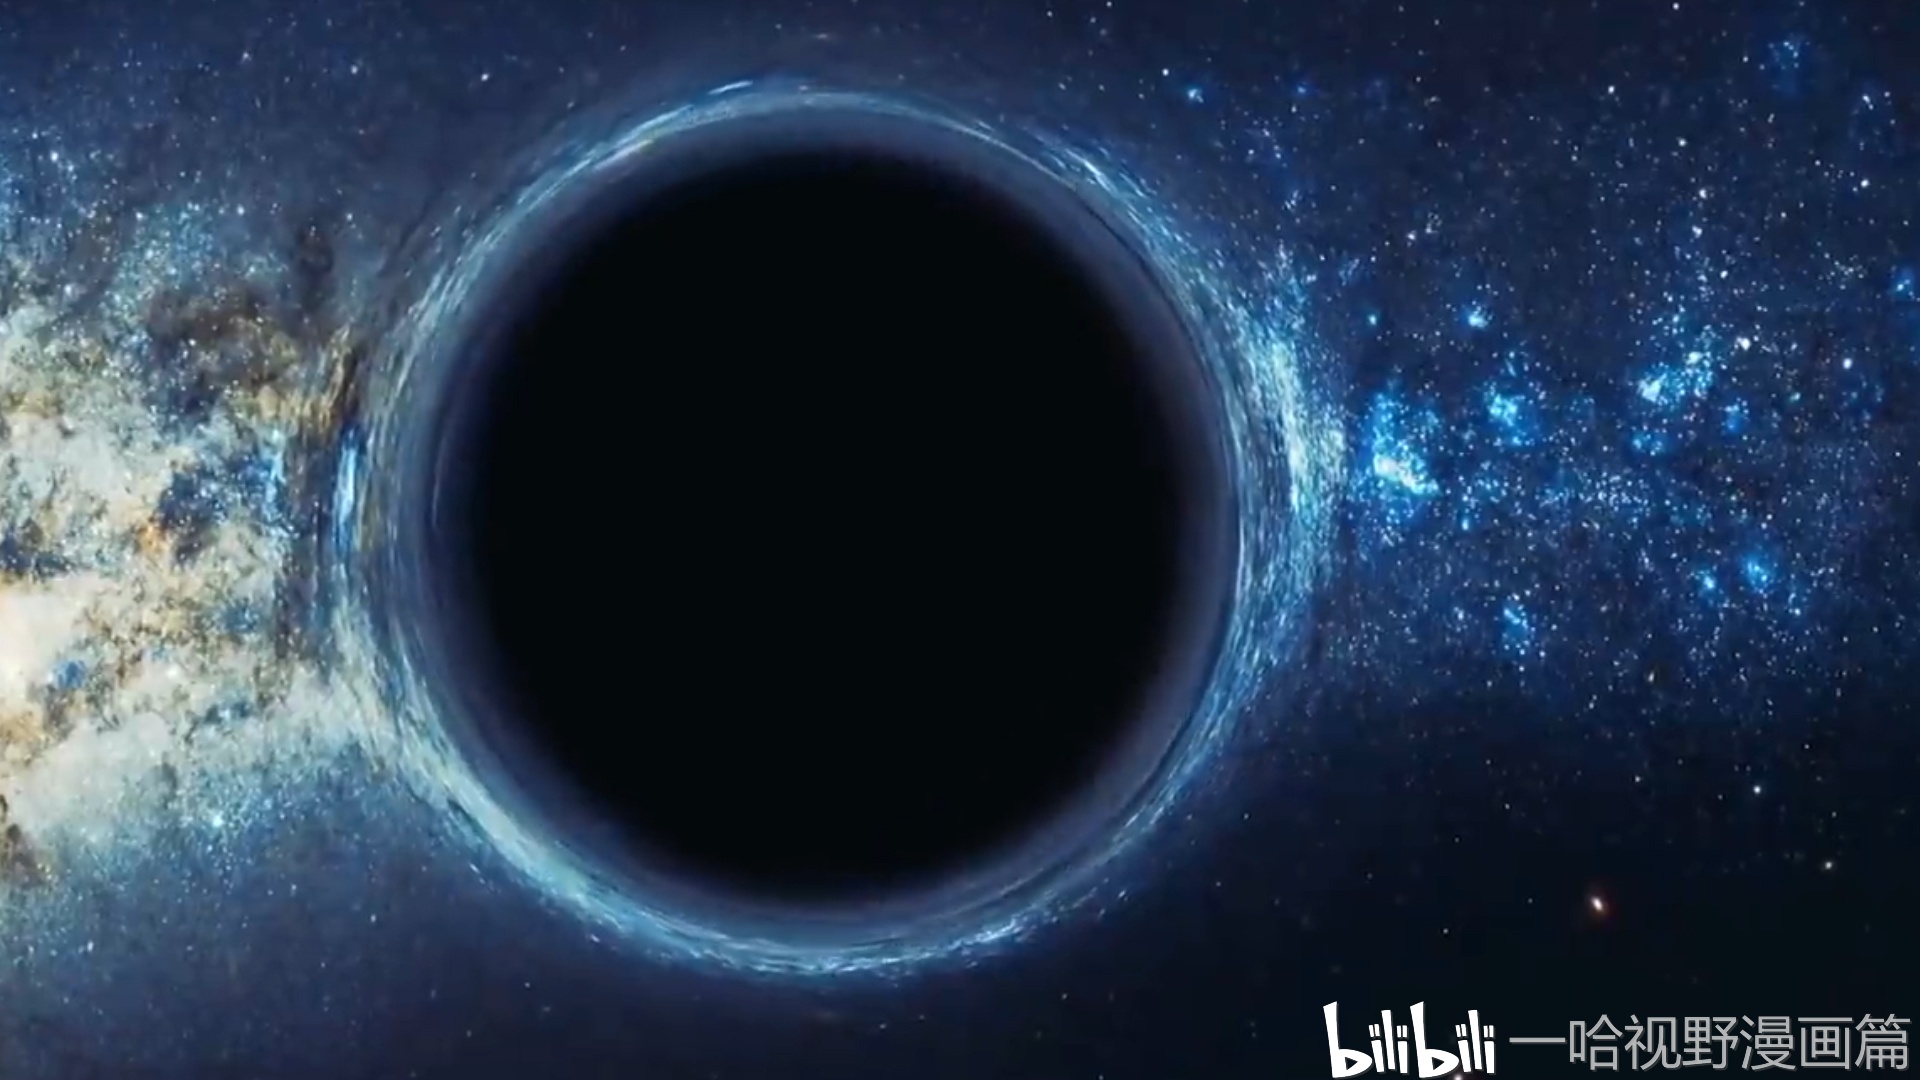 黑洞或许是"重启"宇宙的核心,宇宙最终会全部收缩,开启新纪元